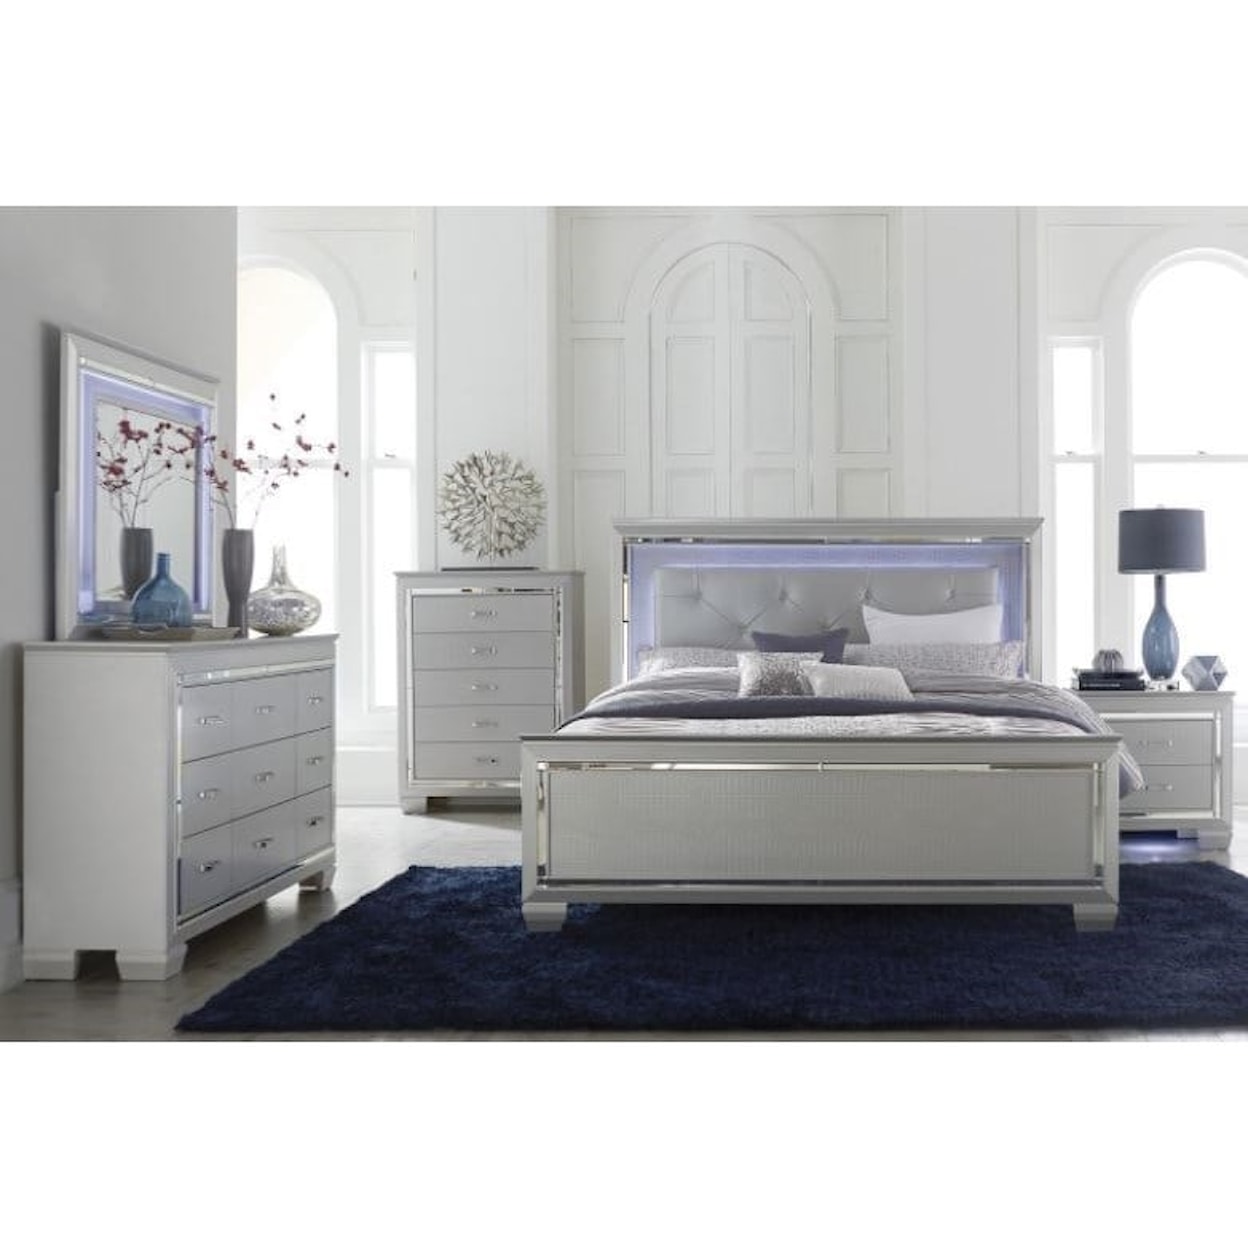 Homelegance Furniture Allura 5-Piece Queen Bedroom Group